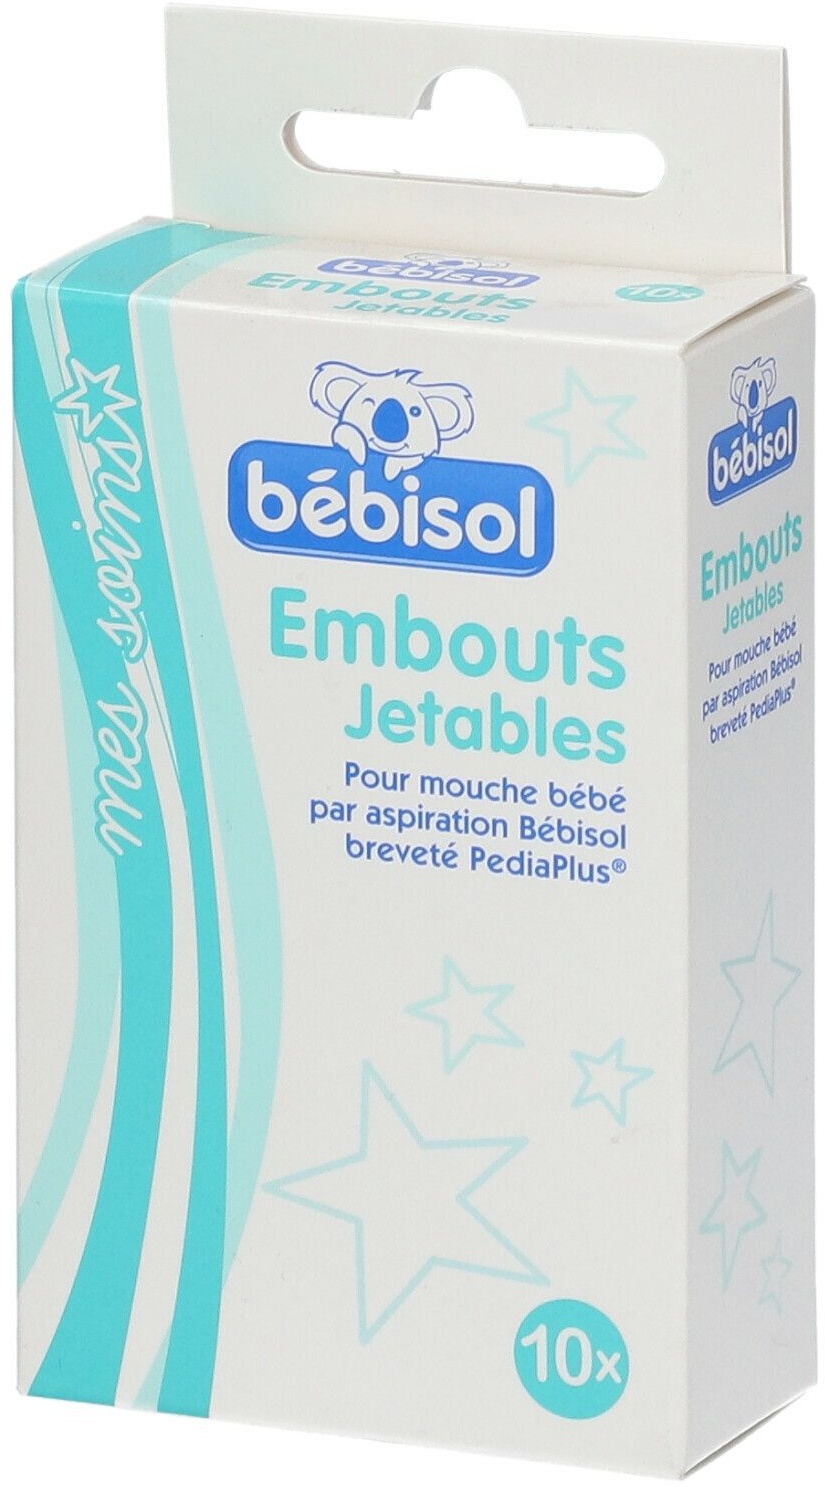 bébisol Embouts Jetables 10 pc(s) Douche nasale